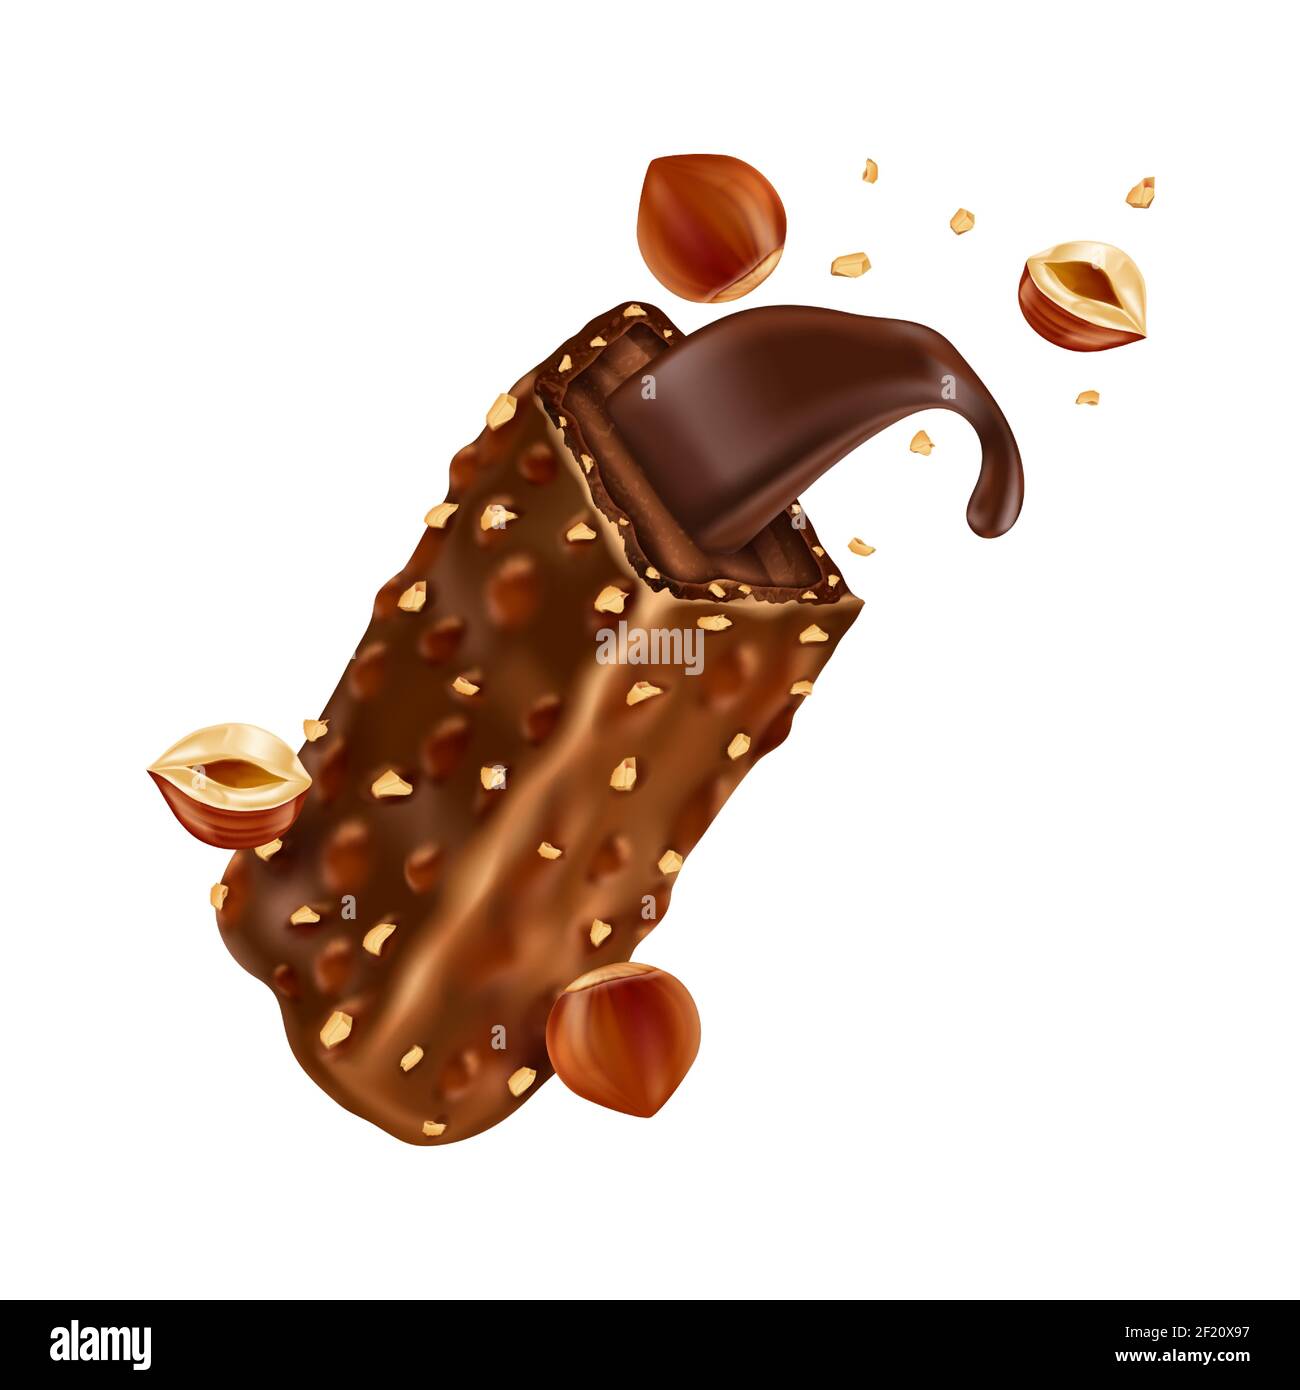 Barre de chocolat sucré avec morceaux de noisettes et caramel. Illustration réaliste vectorielle de bonbons au chocolat brisés avec noix écrasées et crème de cacao isolée sur fond blanc Illustration de Vecteur